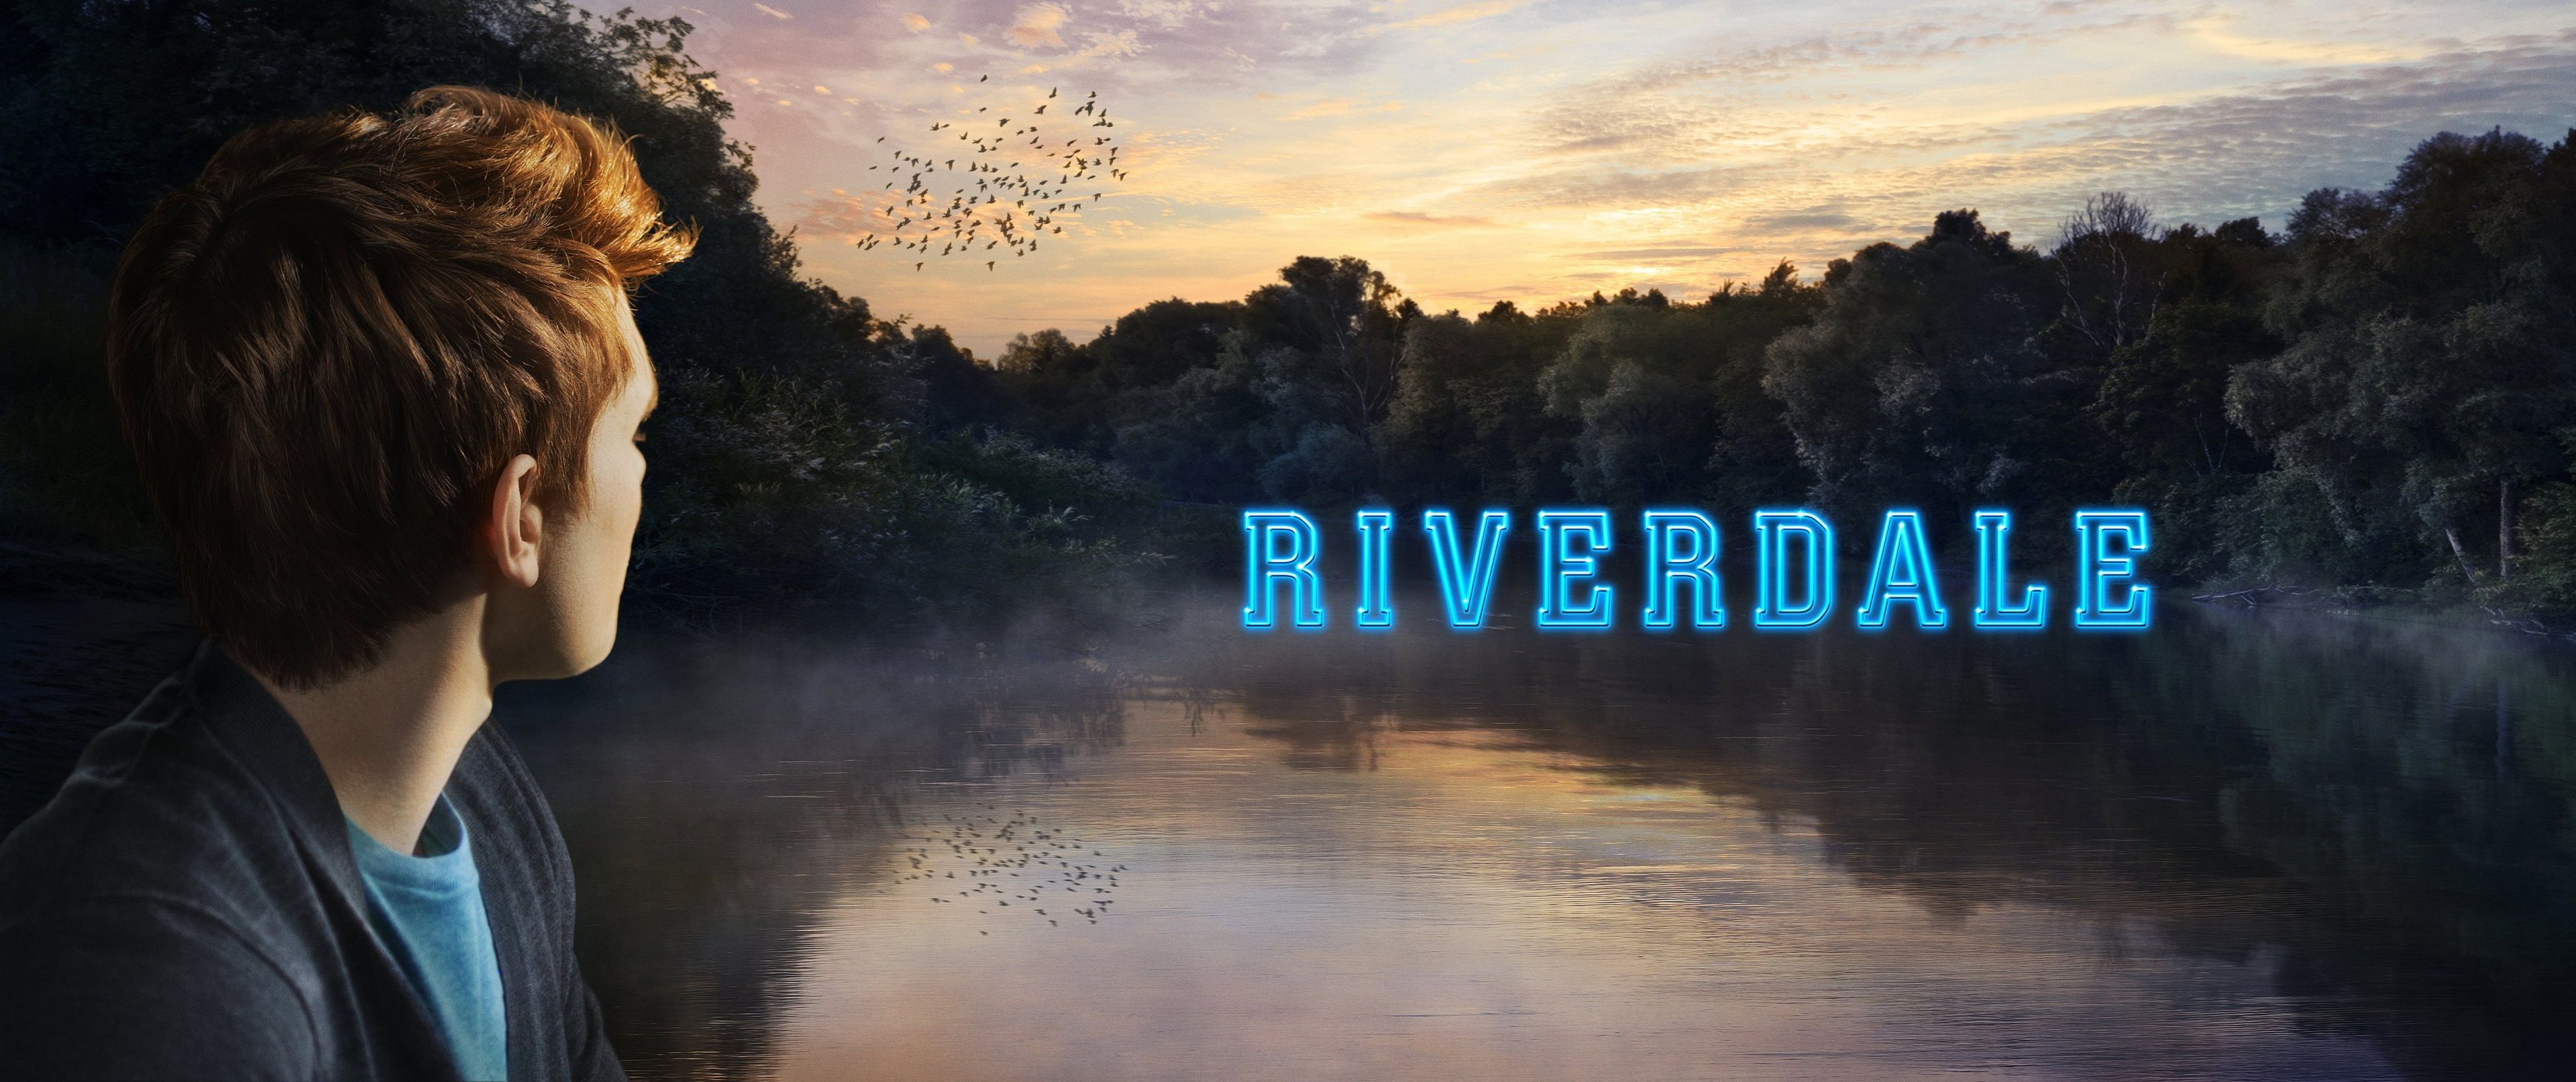 Riverdale Wallpaper Pc - HD Wallpaper 